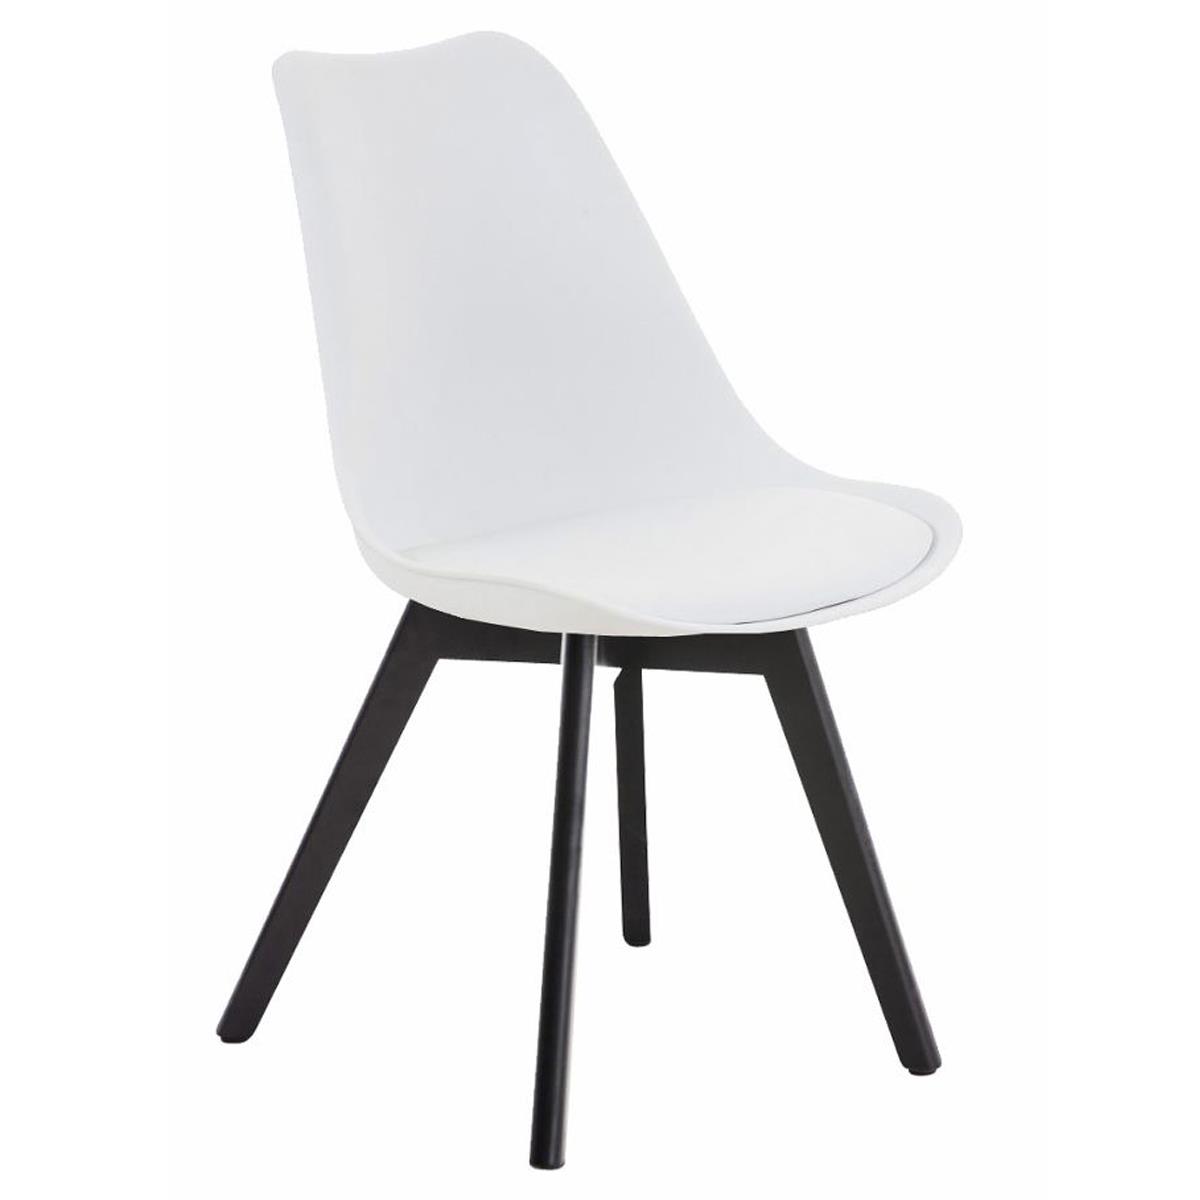 Designer Stuhl/ Besucherstuhl BOSPORUS, dunkle Stuhlbeine, Kunststoffsitzschale, Lederbezug, Farbe Weiß